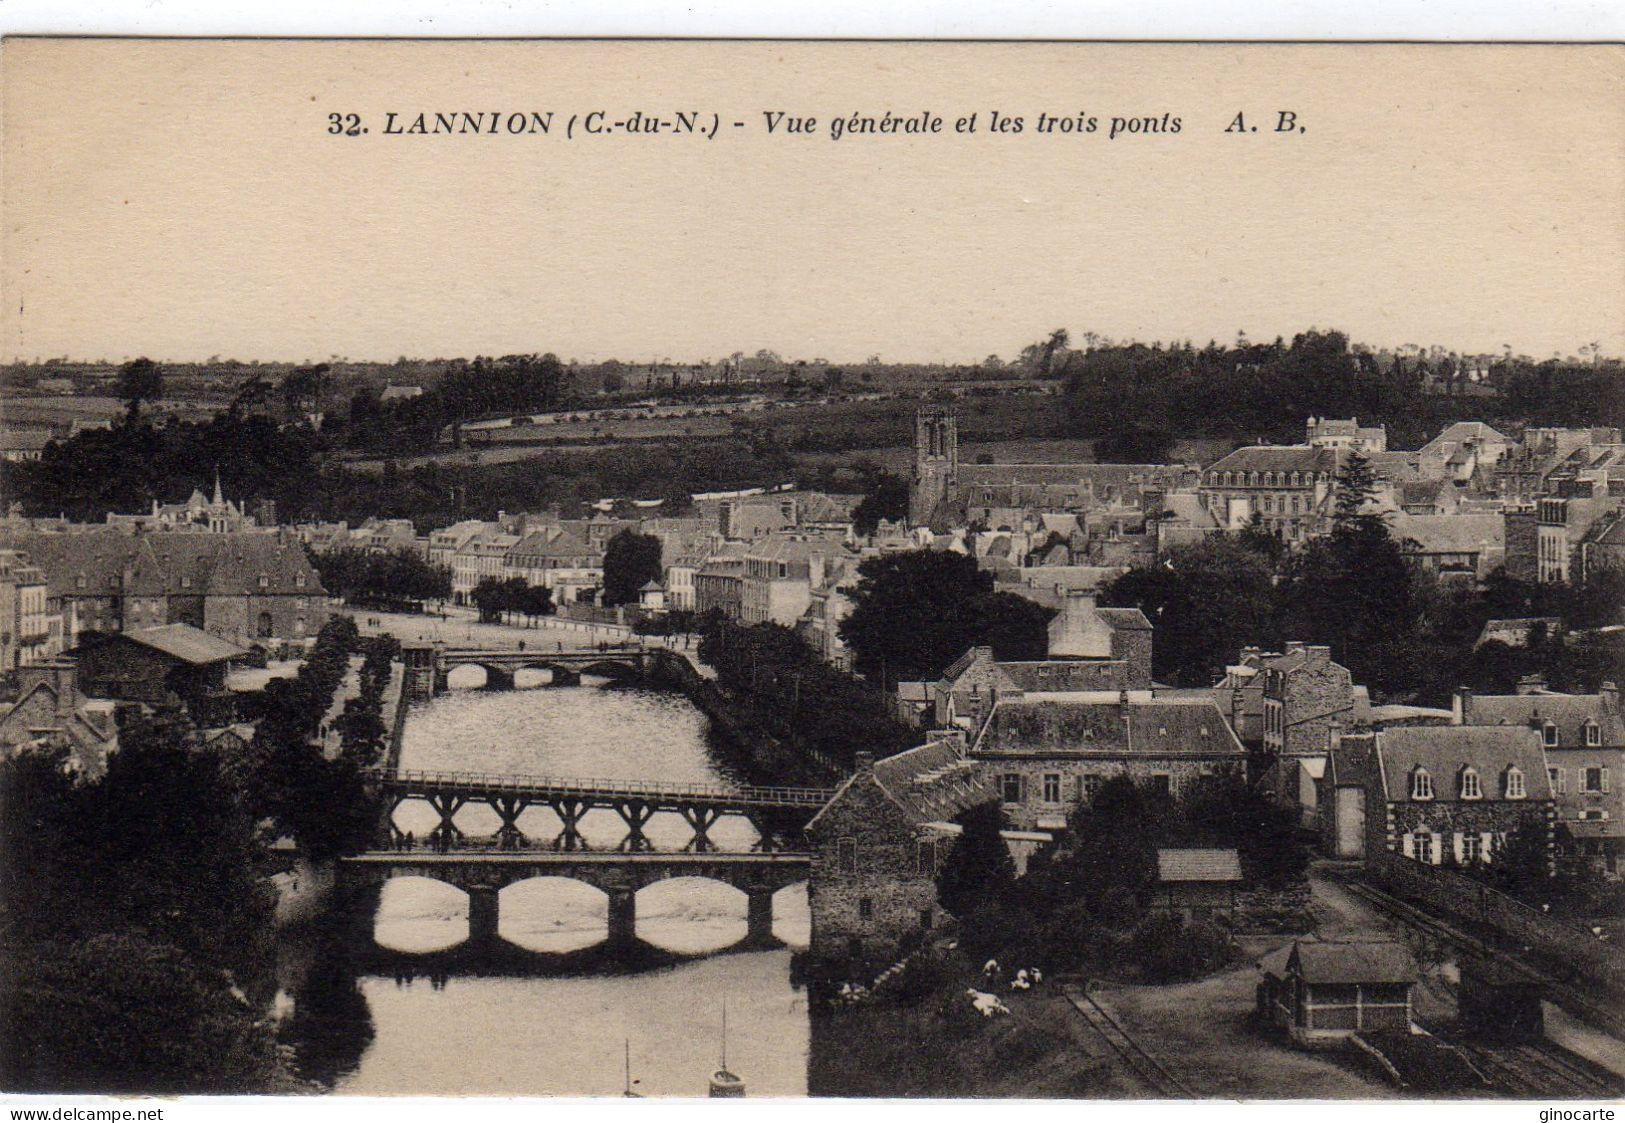 Lannion Vue Generale Et Les Trois Ponts - Lannion